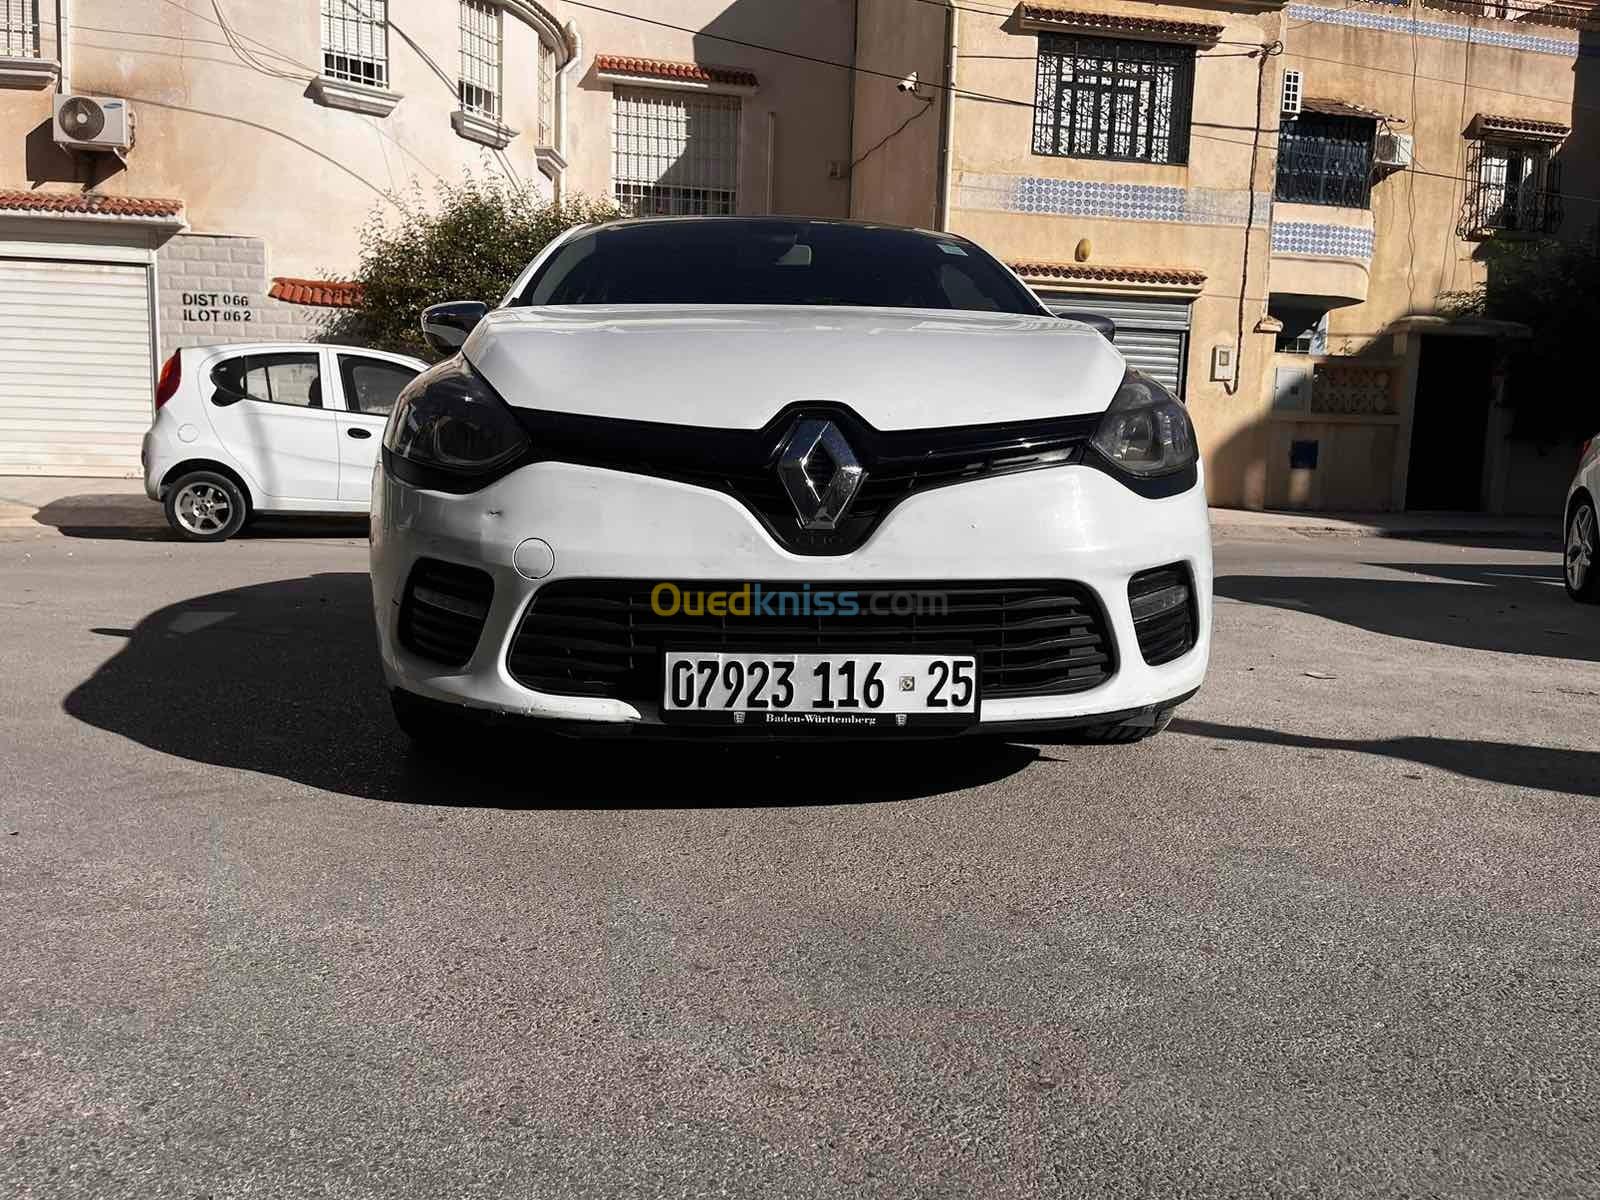 Renault Clio 4 2016 GT Line + - Constantine Algérie